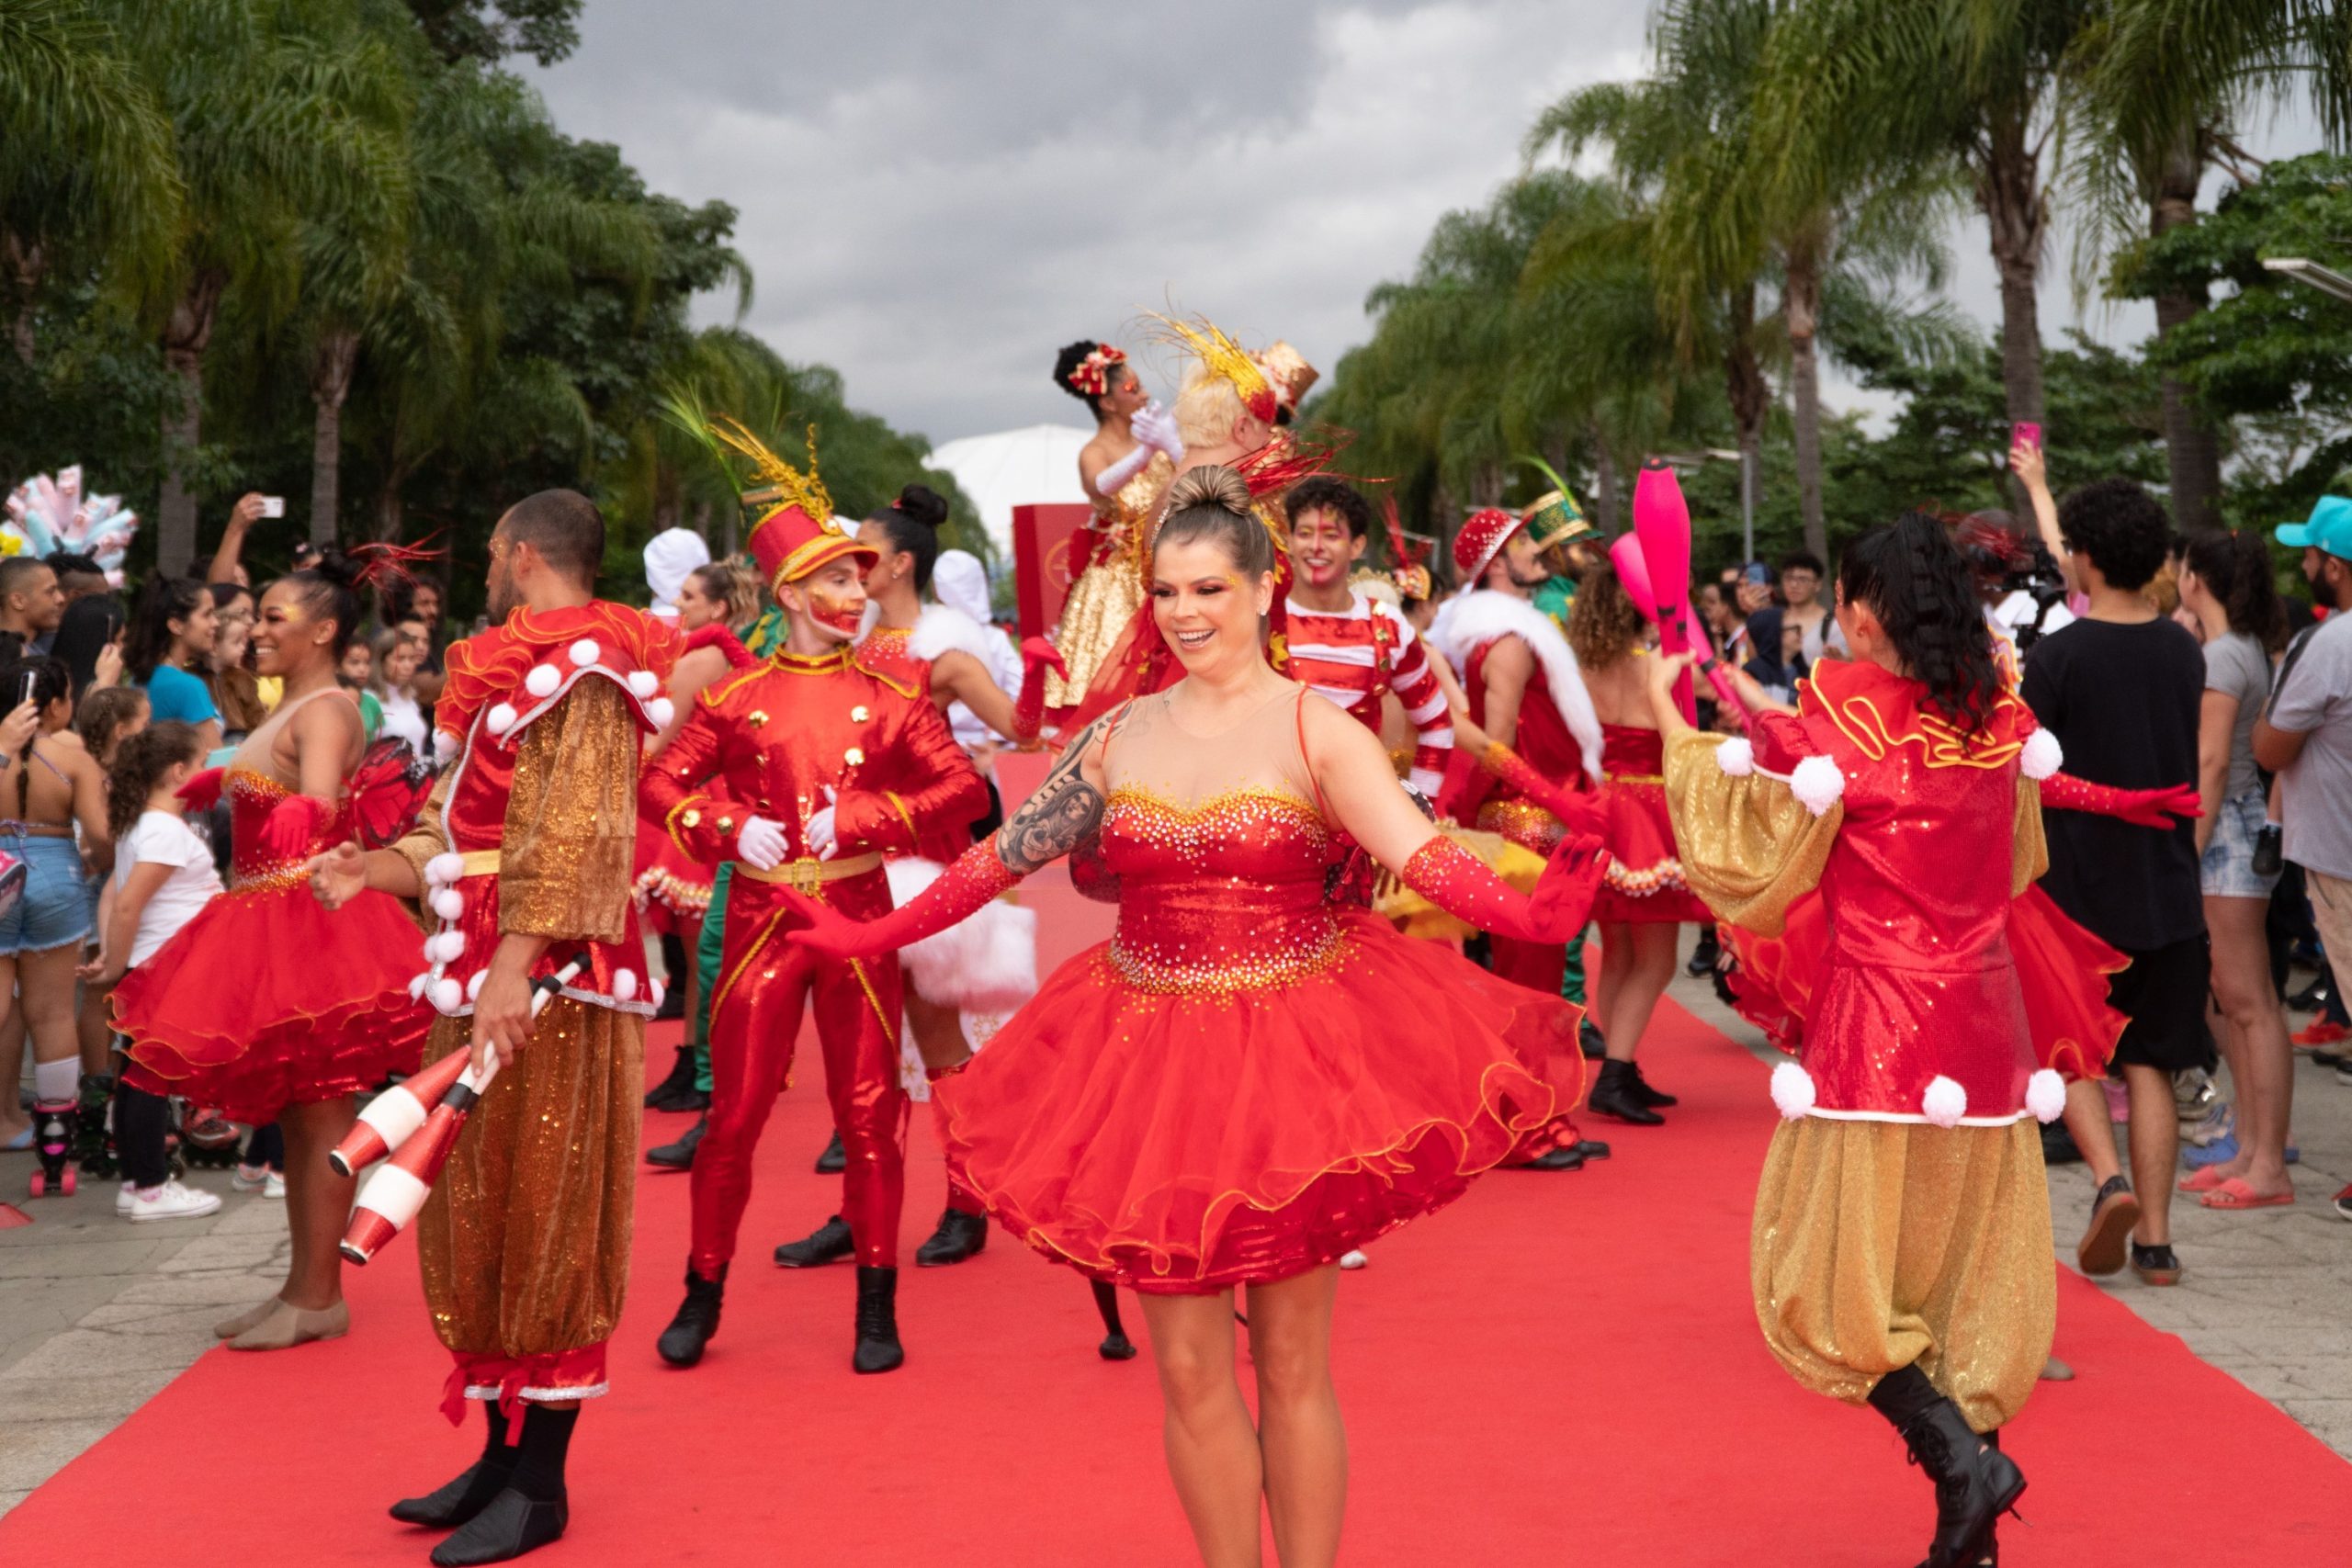 Lindt LINDOR promove Parada de Natal aberta ao público no Parque Villa-Lobos  em SP – : : CidadeMarketing : :